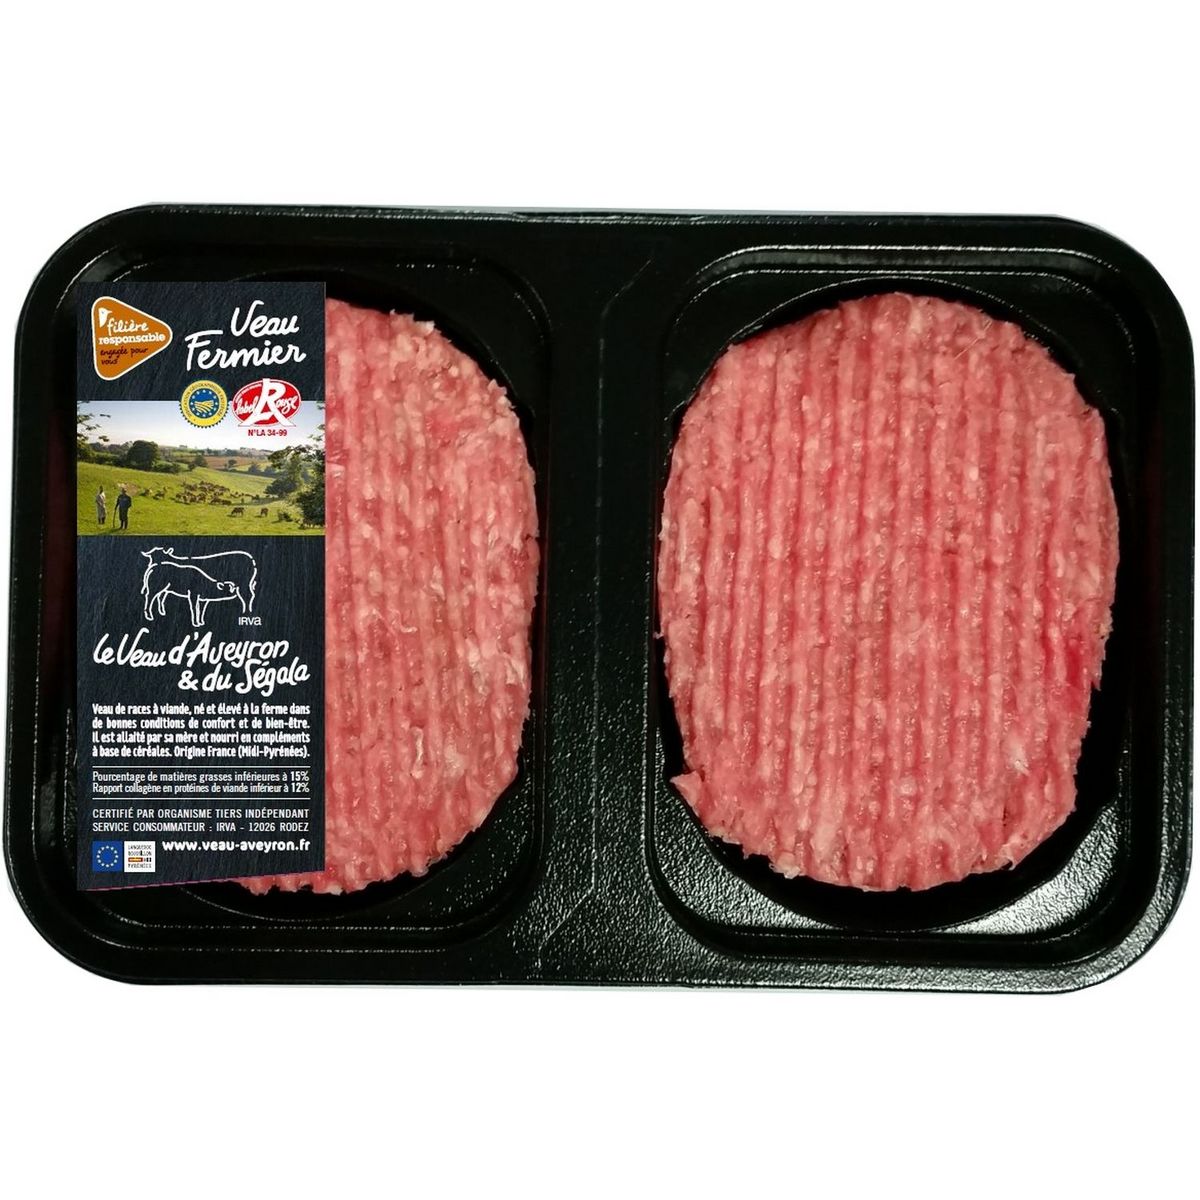 CULTIVONS LE BON Steak haché de veau fermier Label Rouge 15% mg   2 pièces 250g